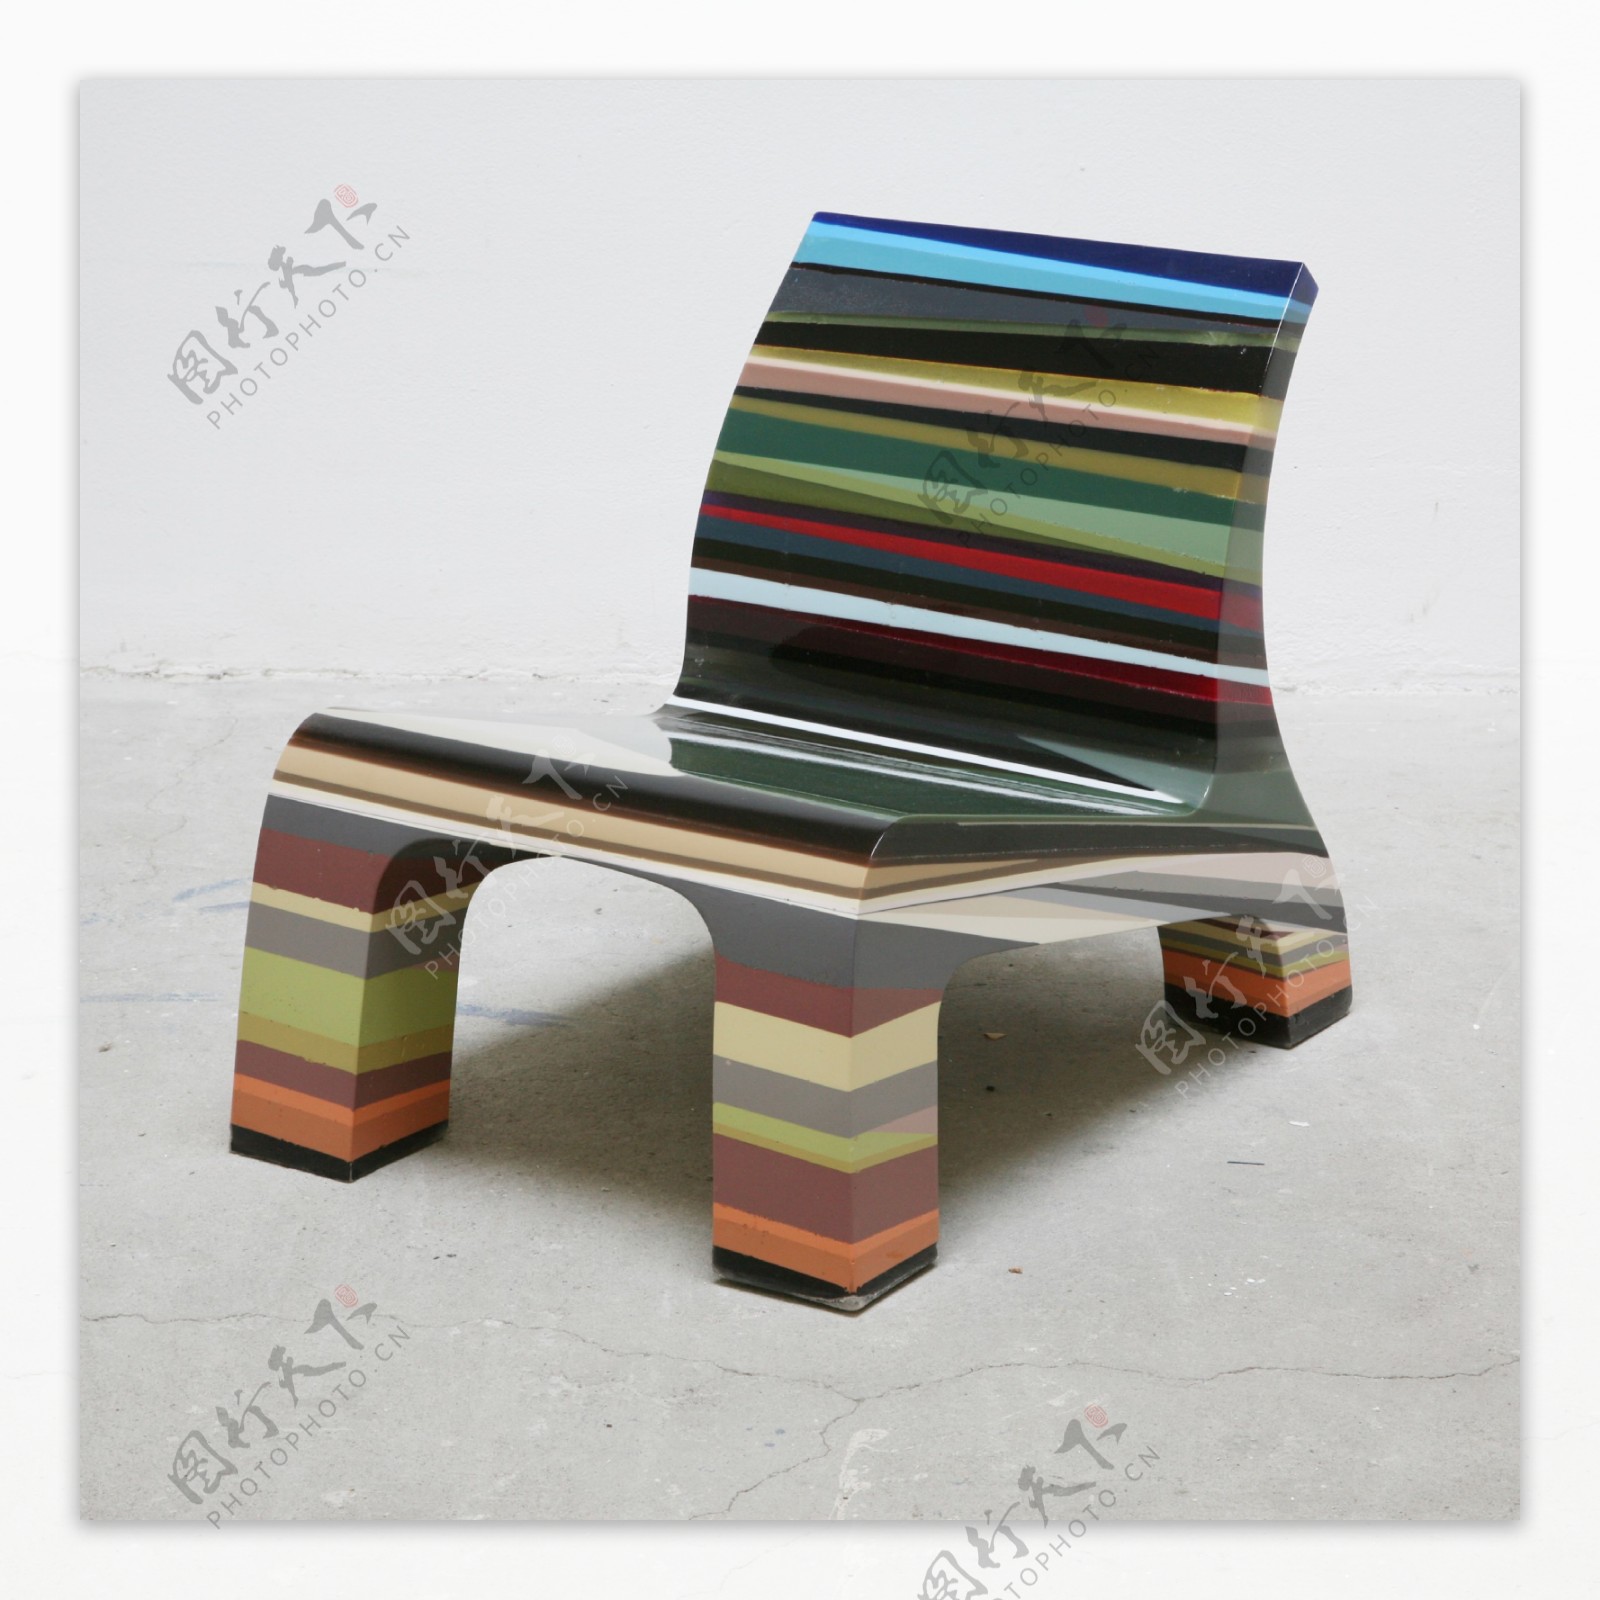 2009米兰设计周彩色椅子图片